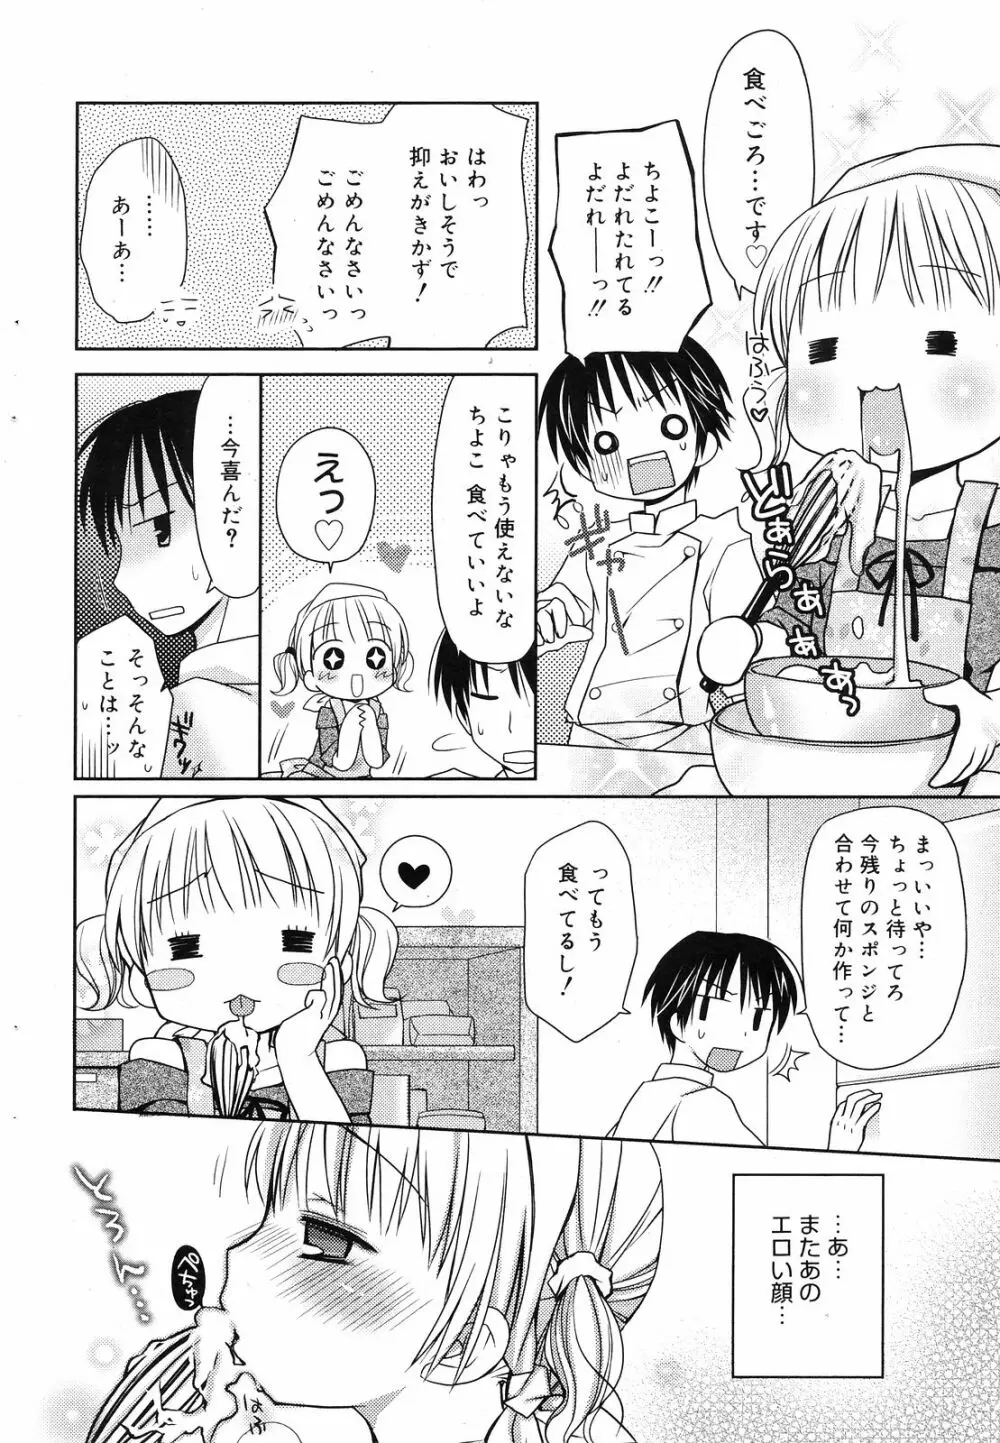 Manga Bangaichi 2008-12 64ページ